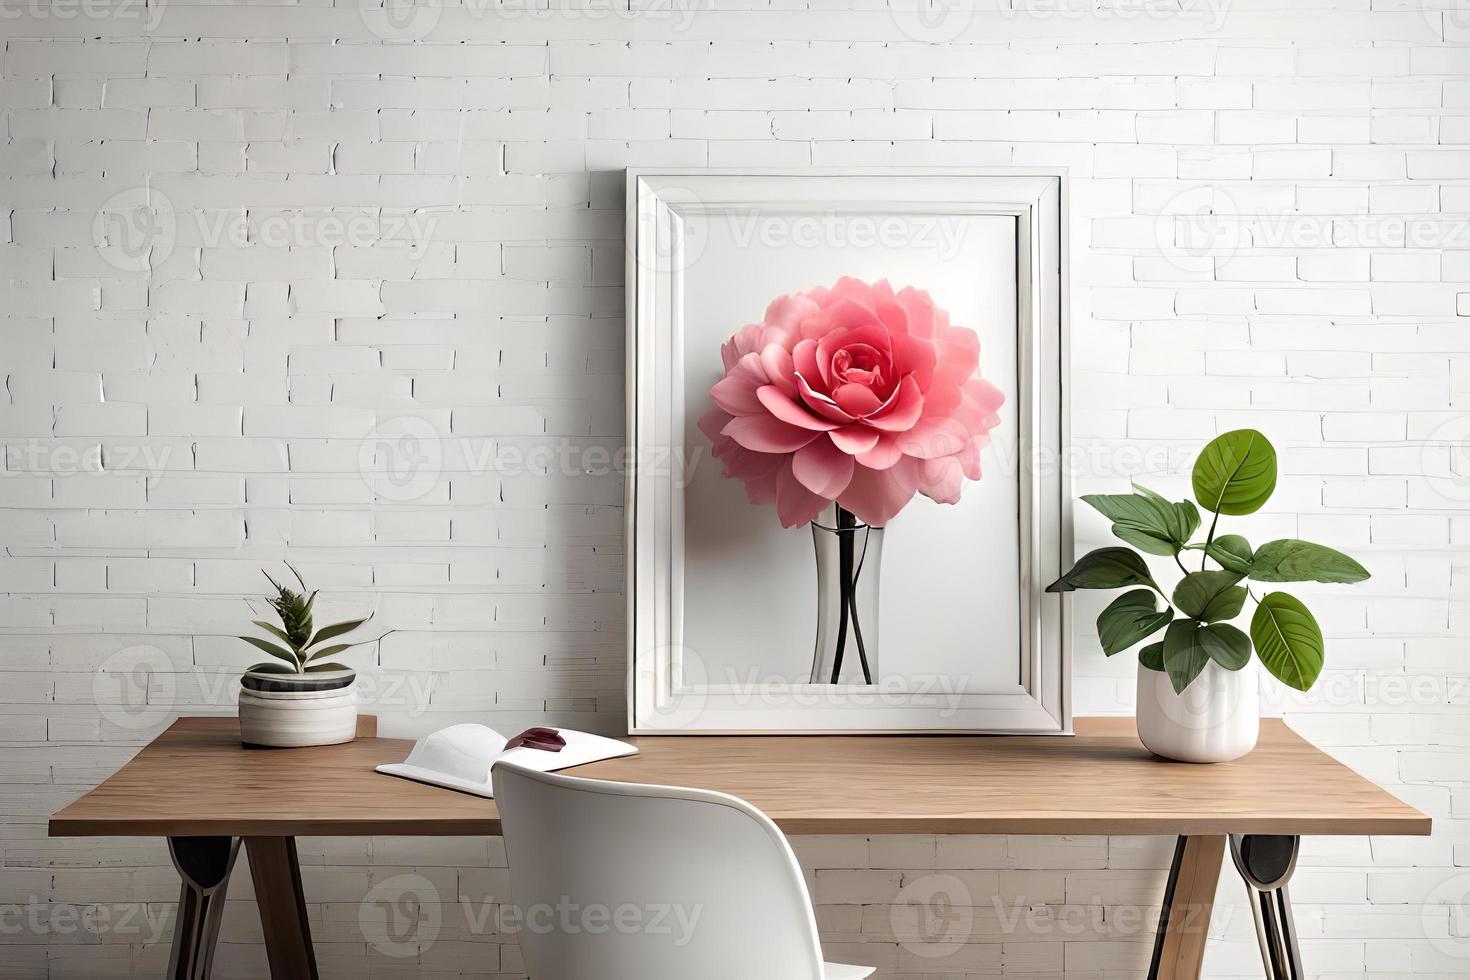 minimal vit bild ram duk visa med blomma i vas foto